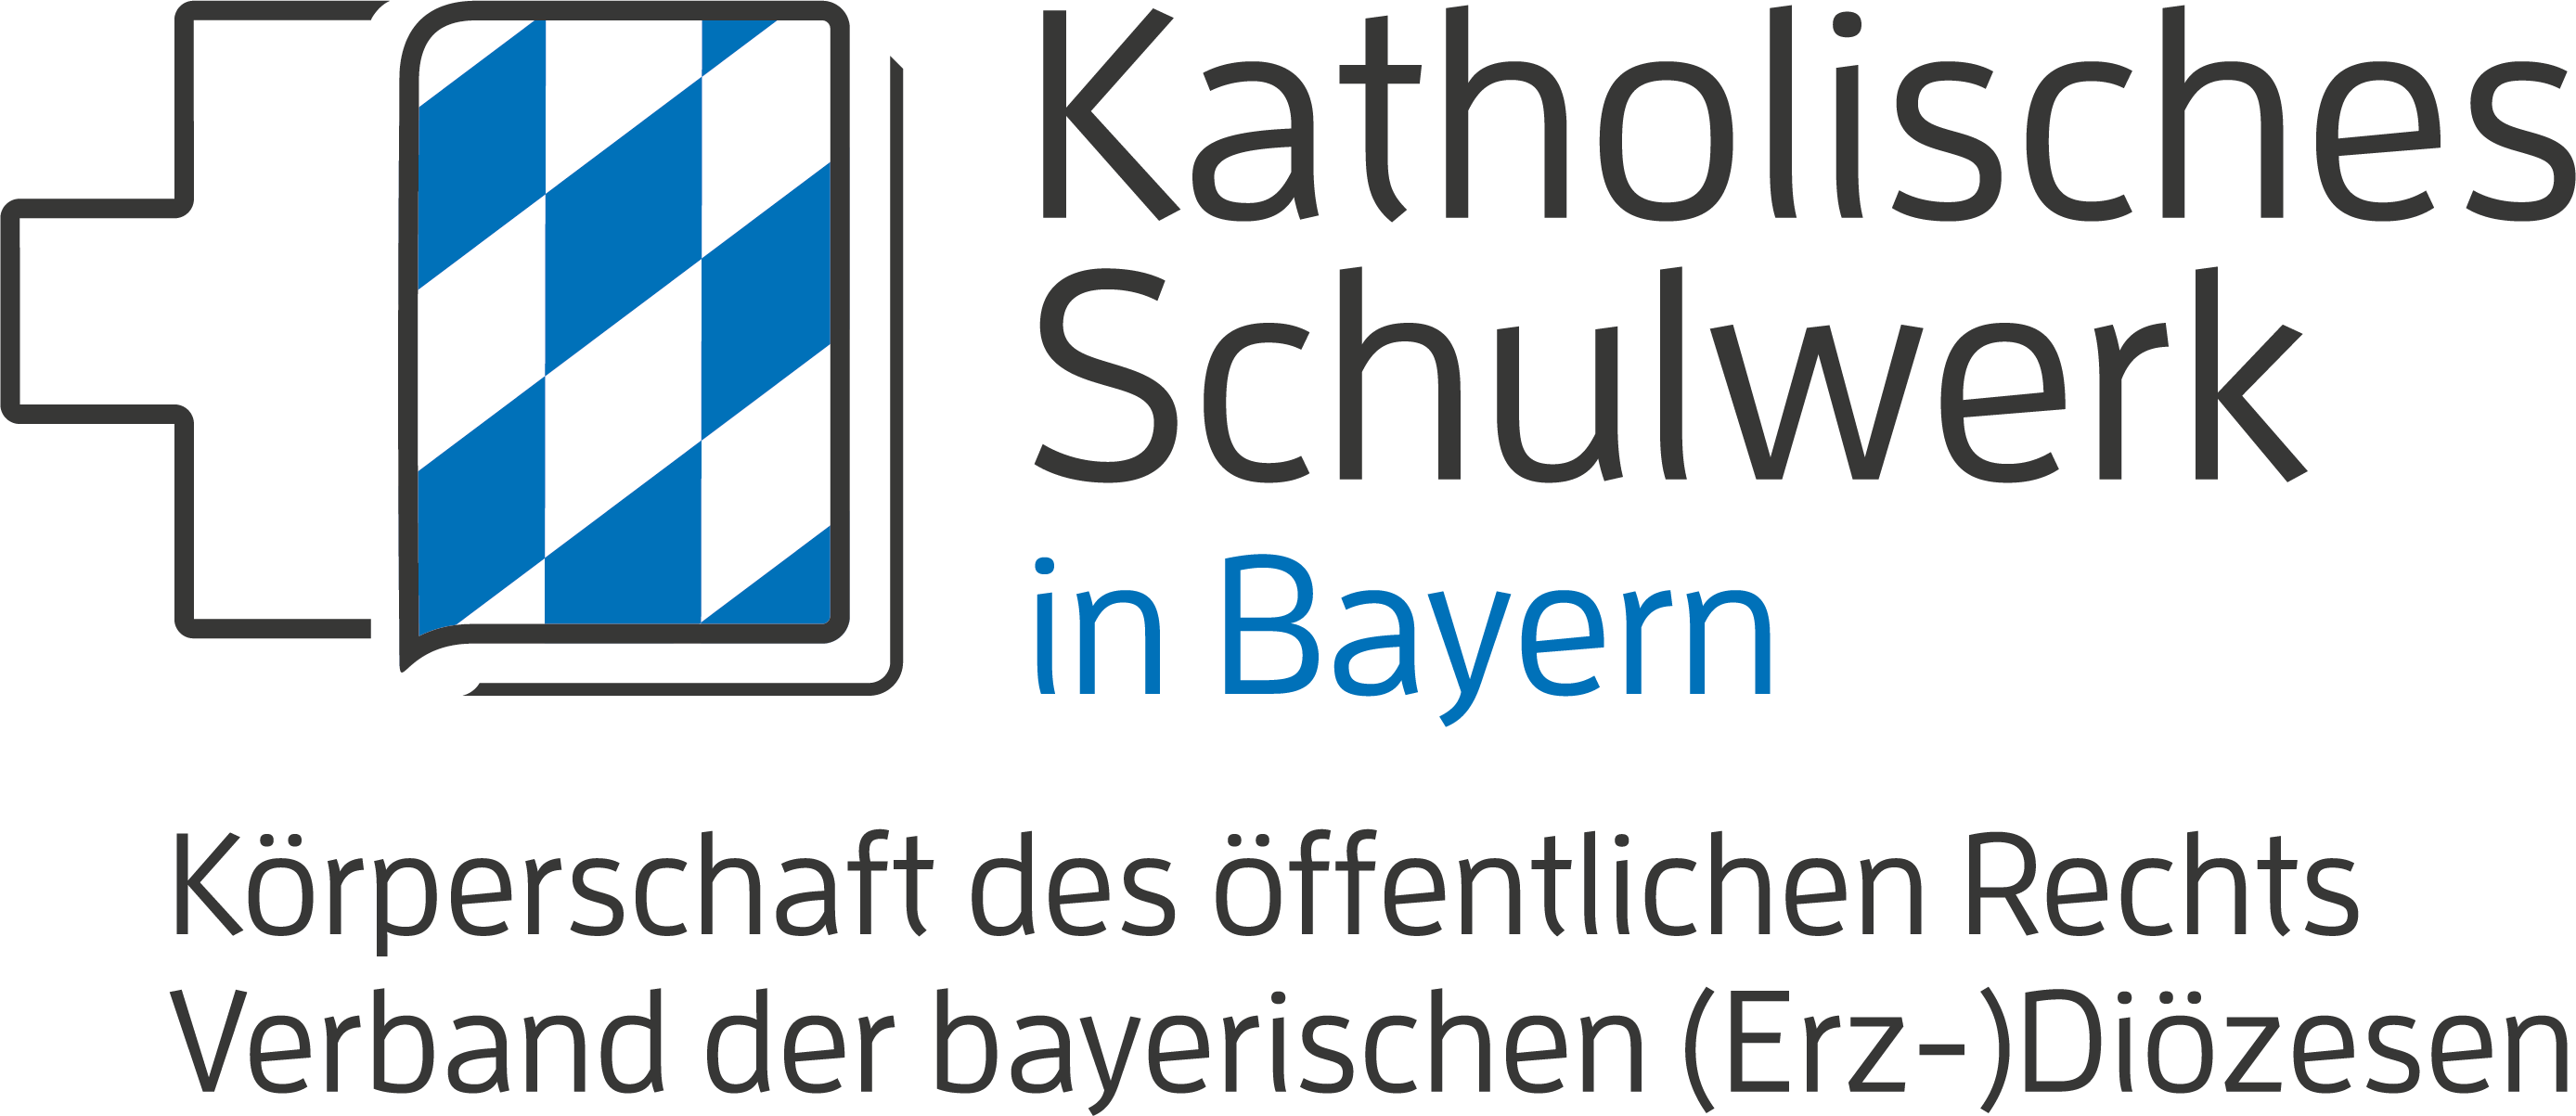 Katholisches Schulwerk in Bayern logo